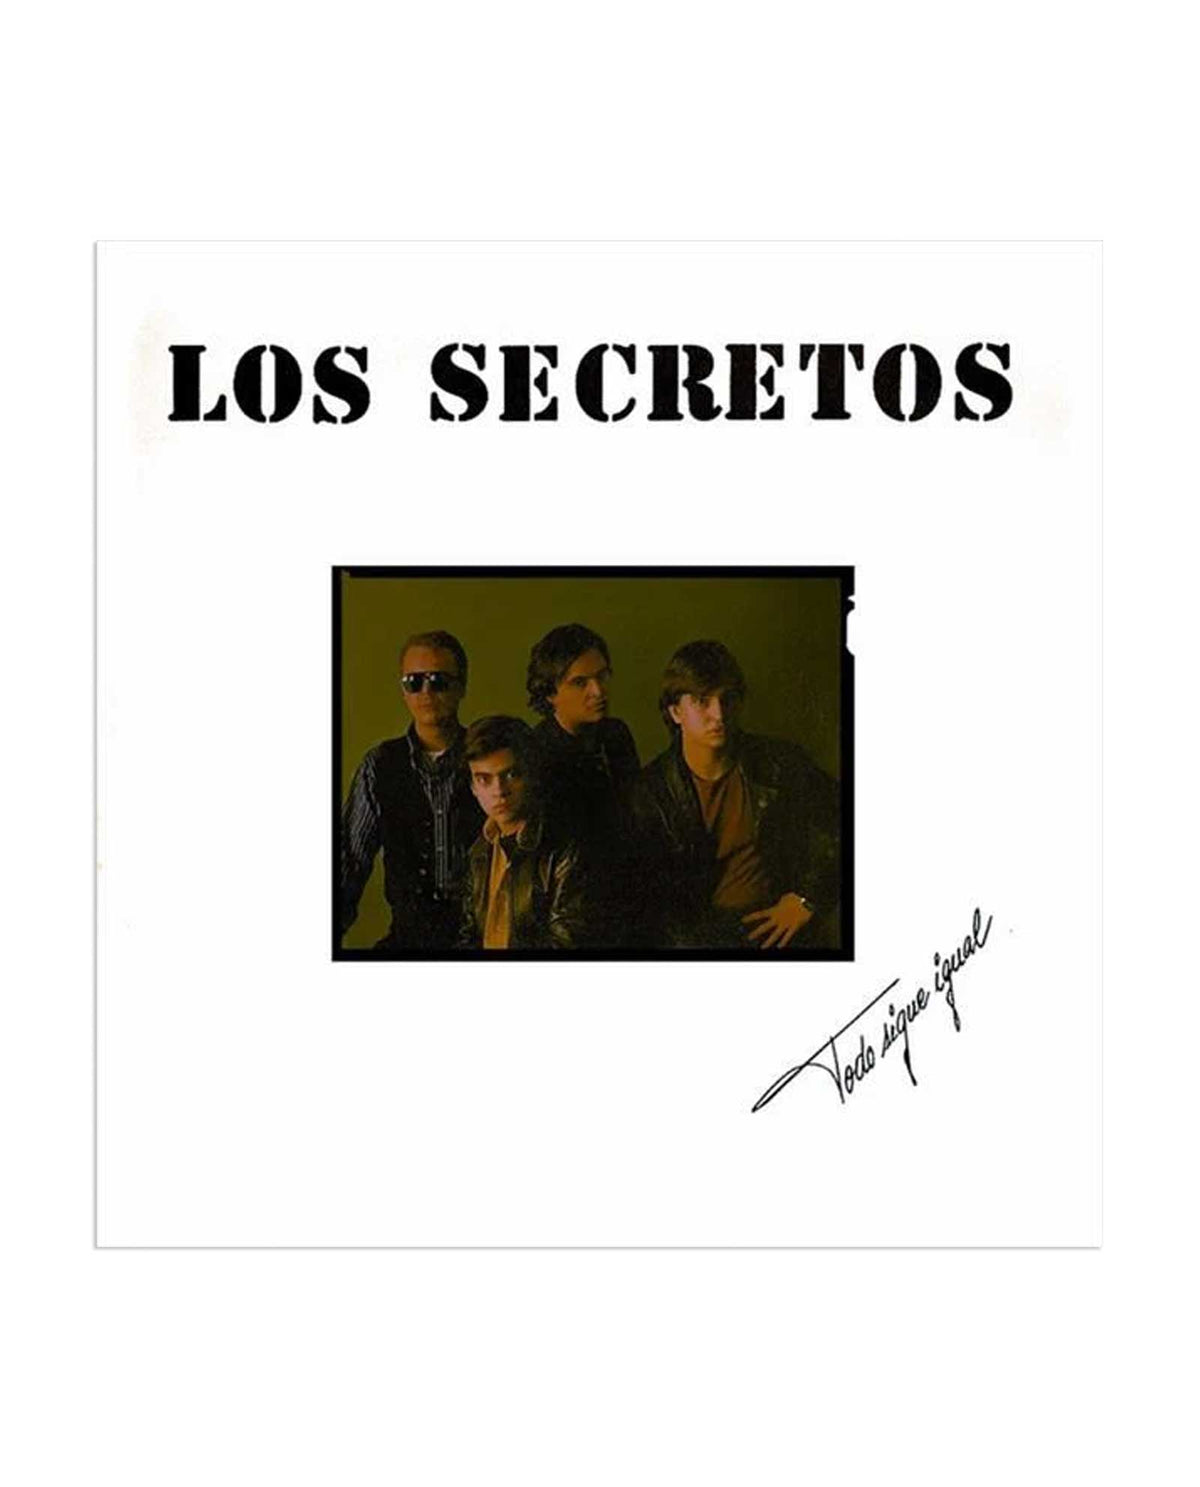 Los Secretos - LP "Todo Sigue Igual" - Rocktud - Los Secretos